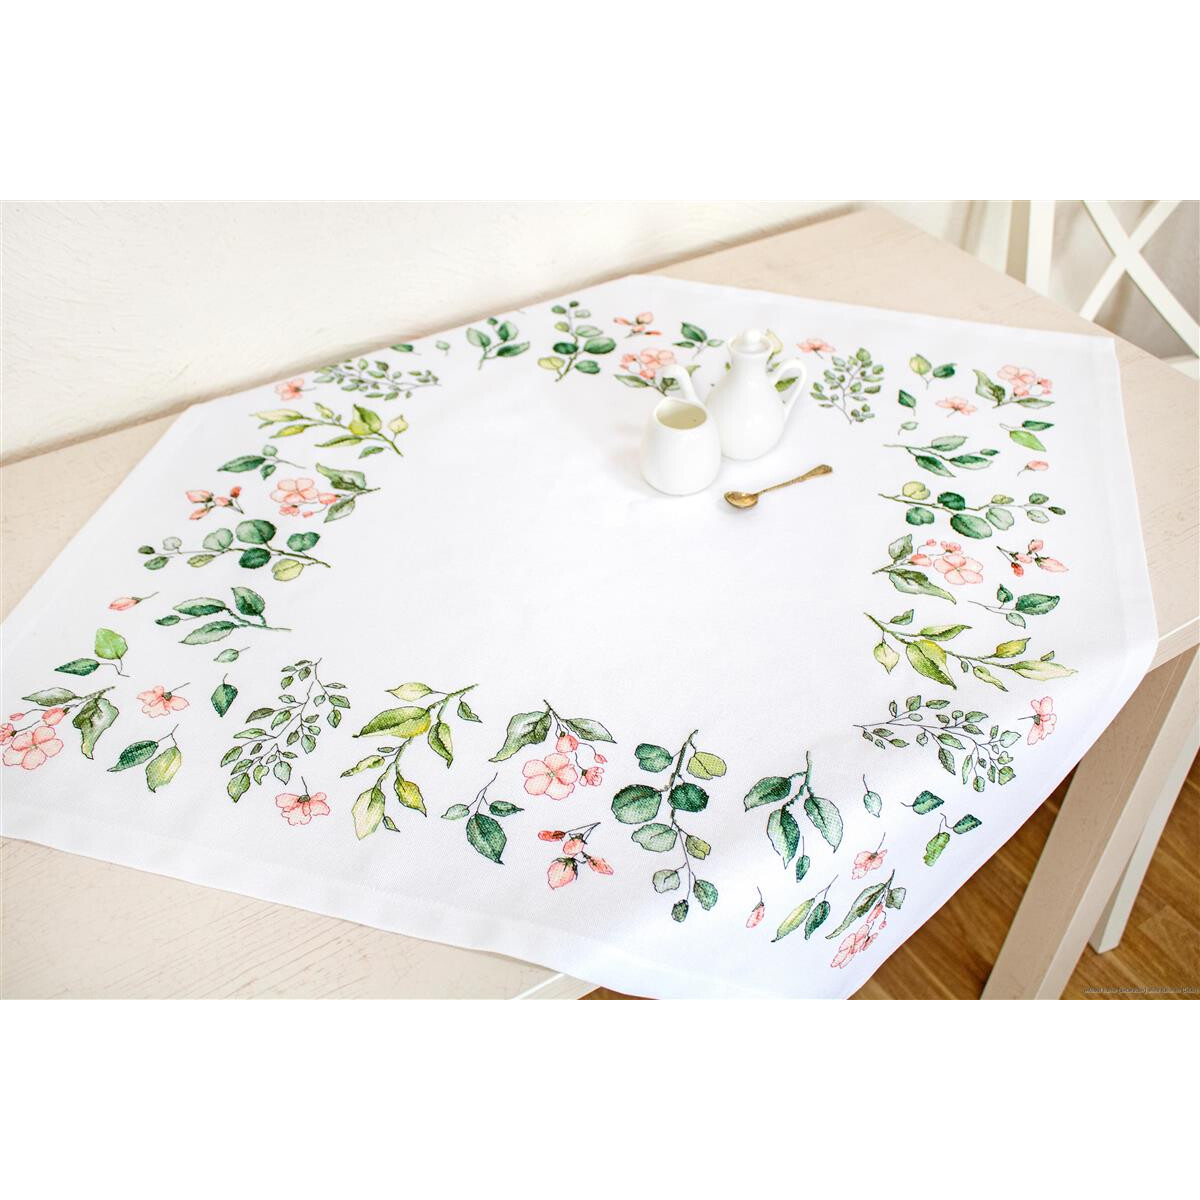 Eine weiße Tischdecke mit Blumen- und Blattmustern...